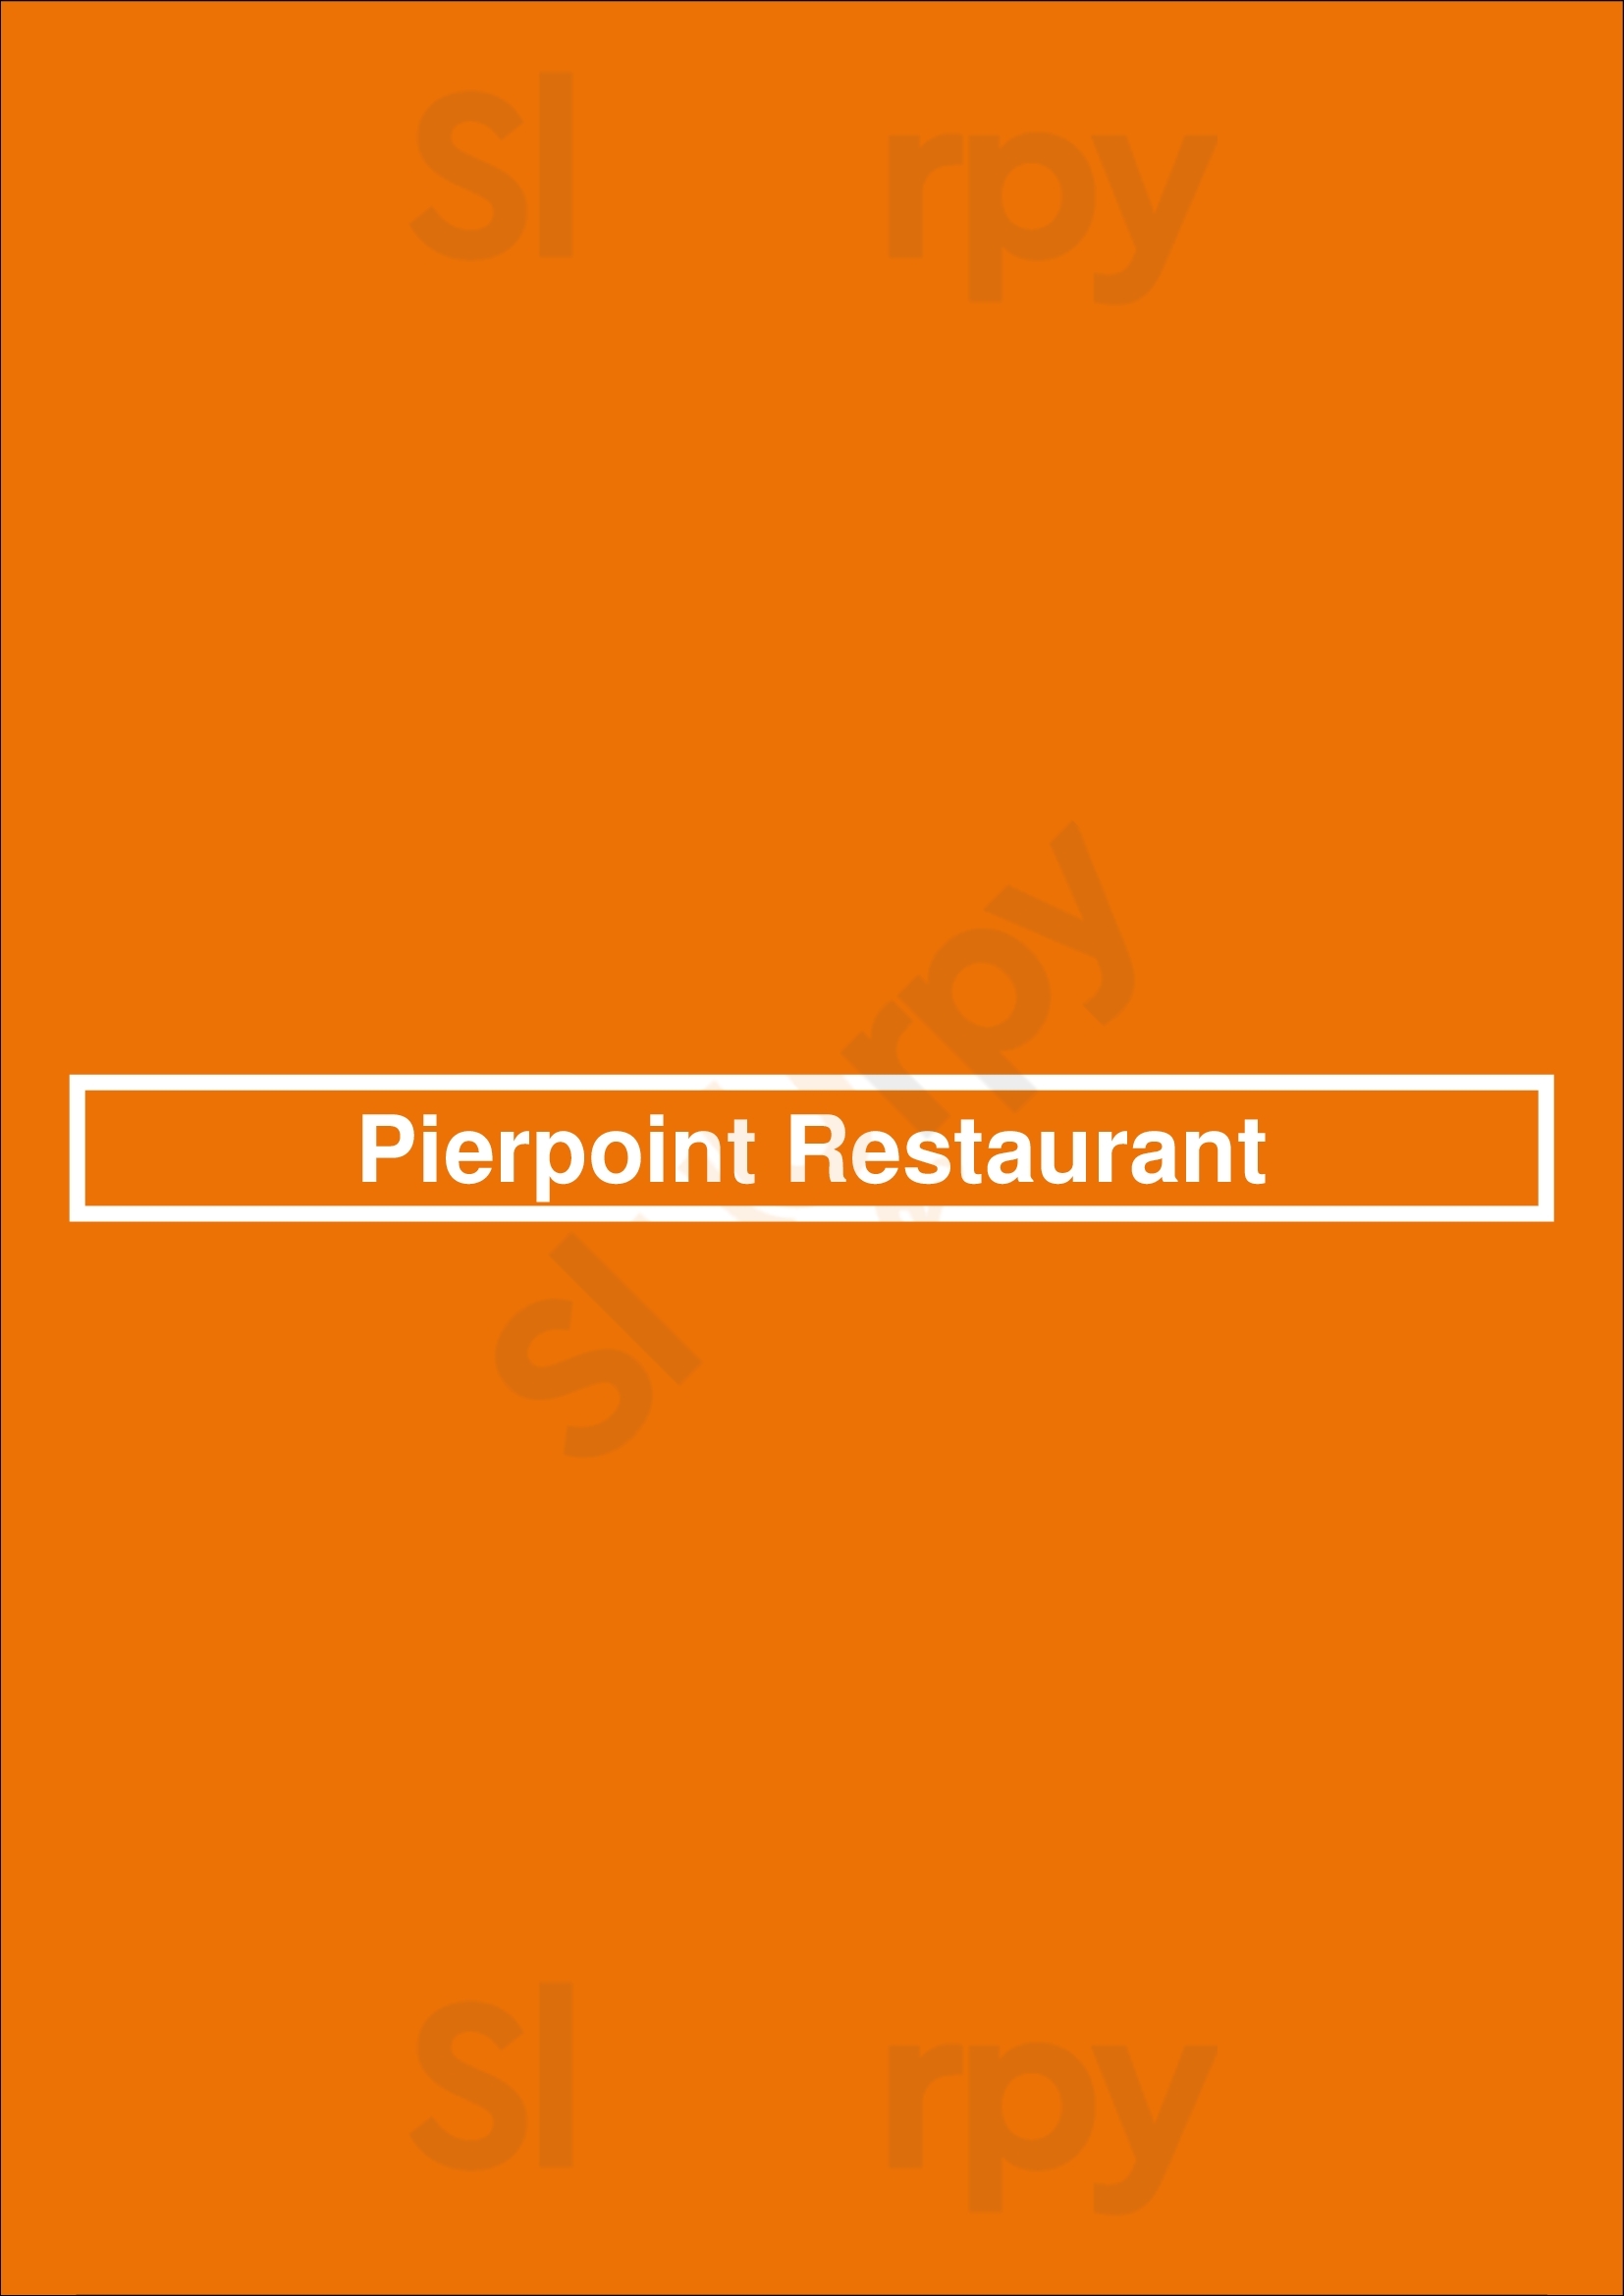 Pierpoint Restaurant Baltimore Menu - 1